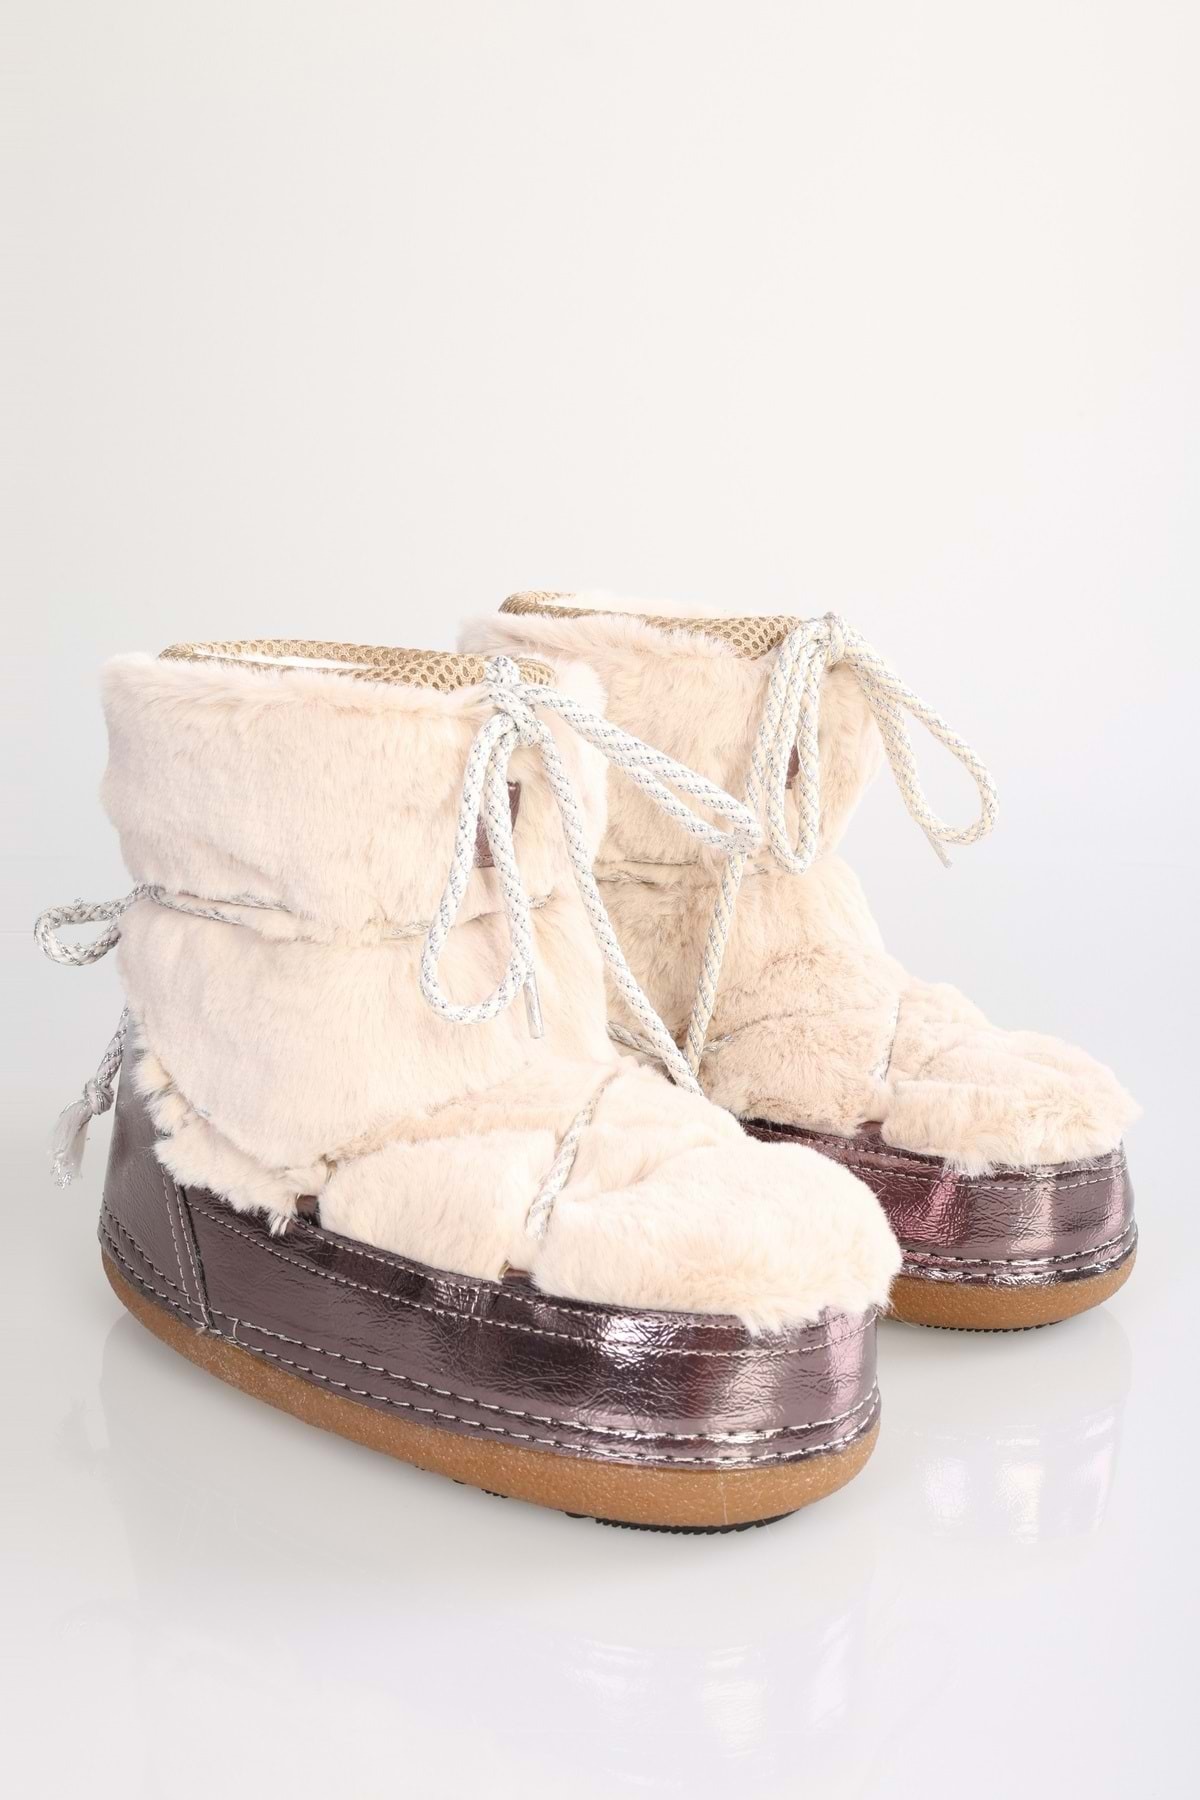 Shoeberry Women's Snowie Beige Furry Thick Sole Snow Boots